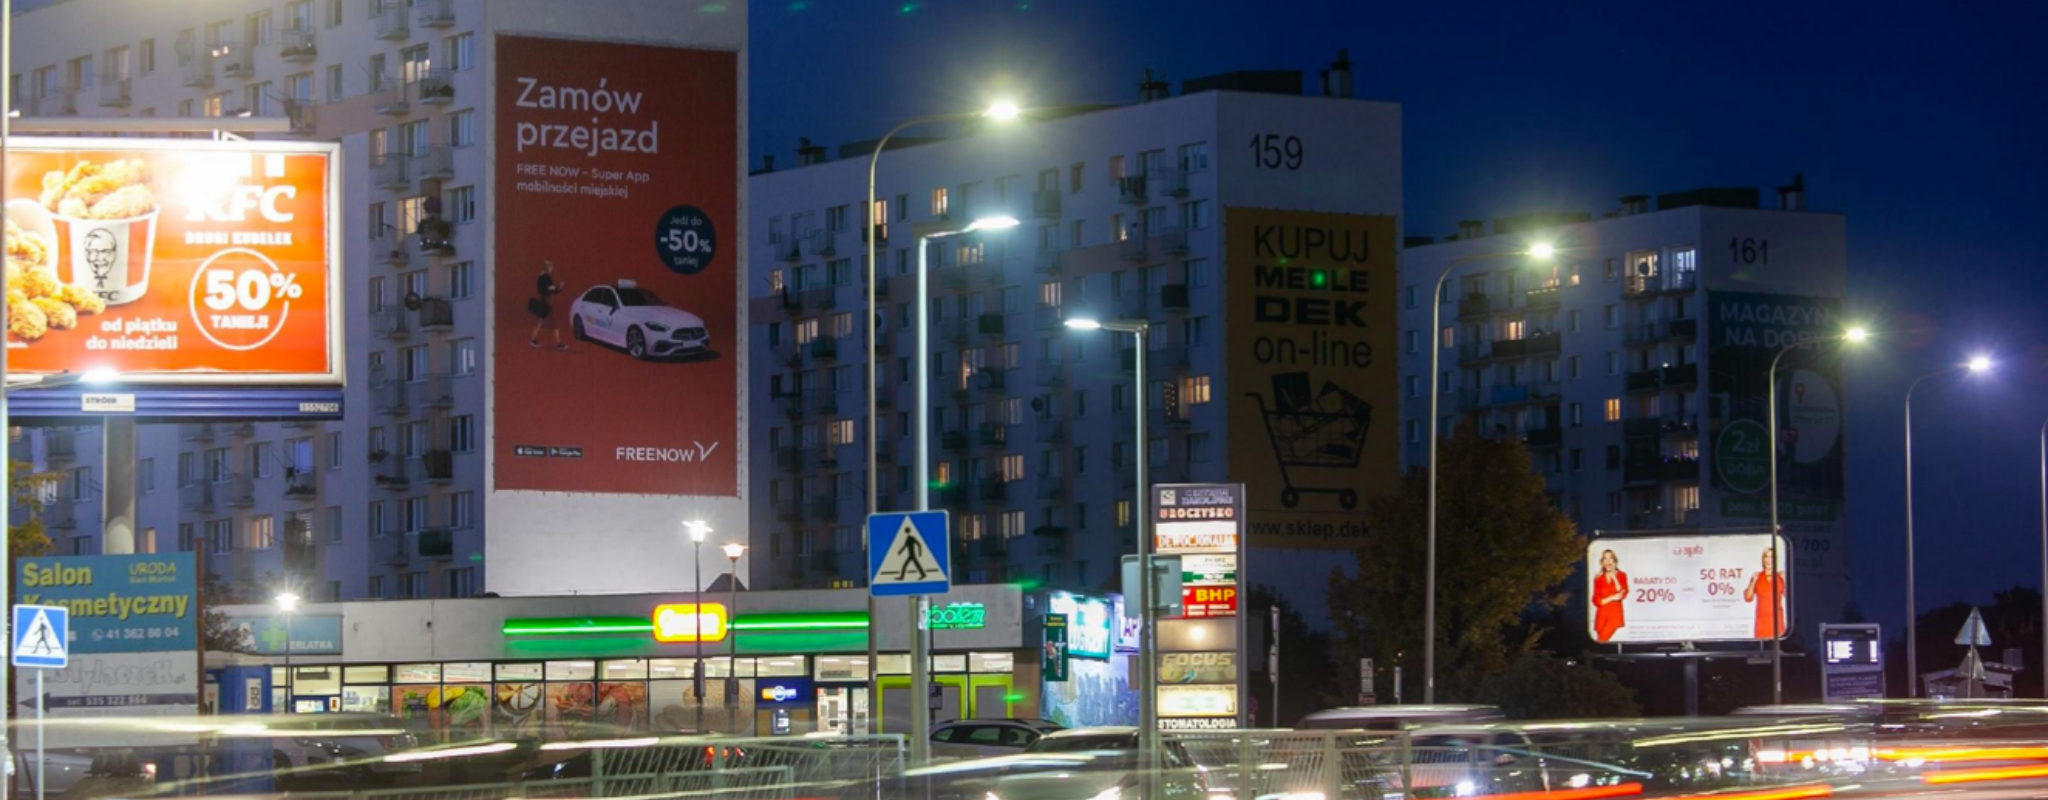 Powierzchnia reklamowa w Kielcach